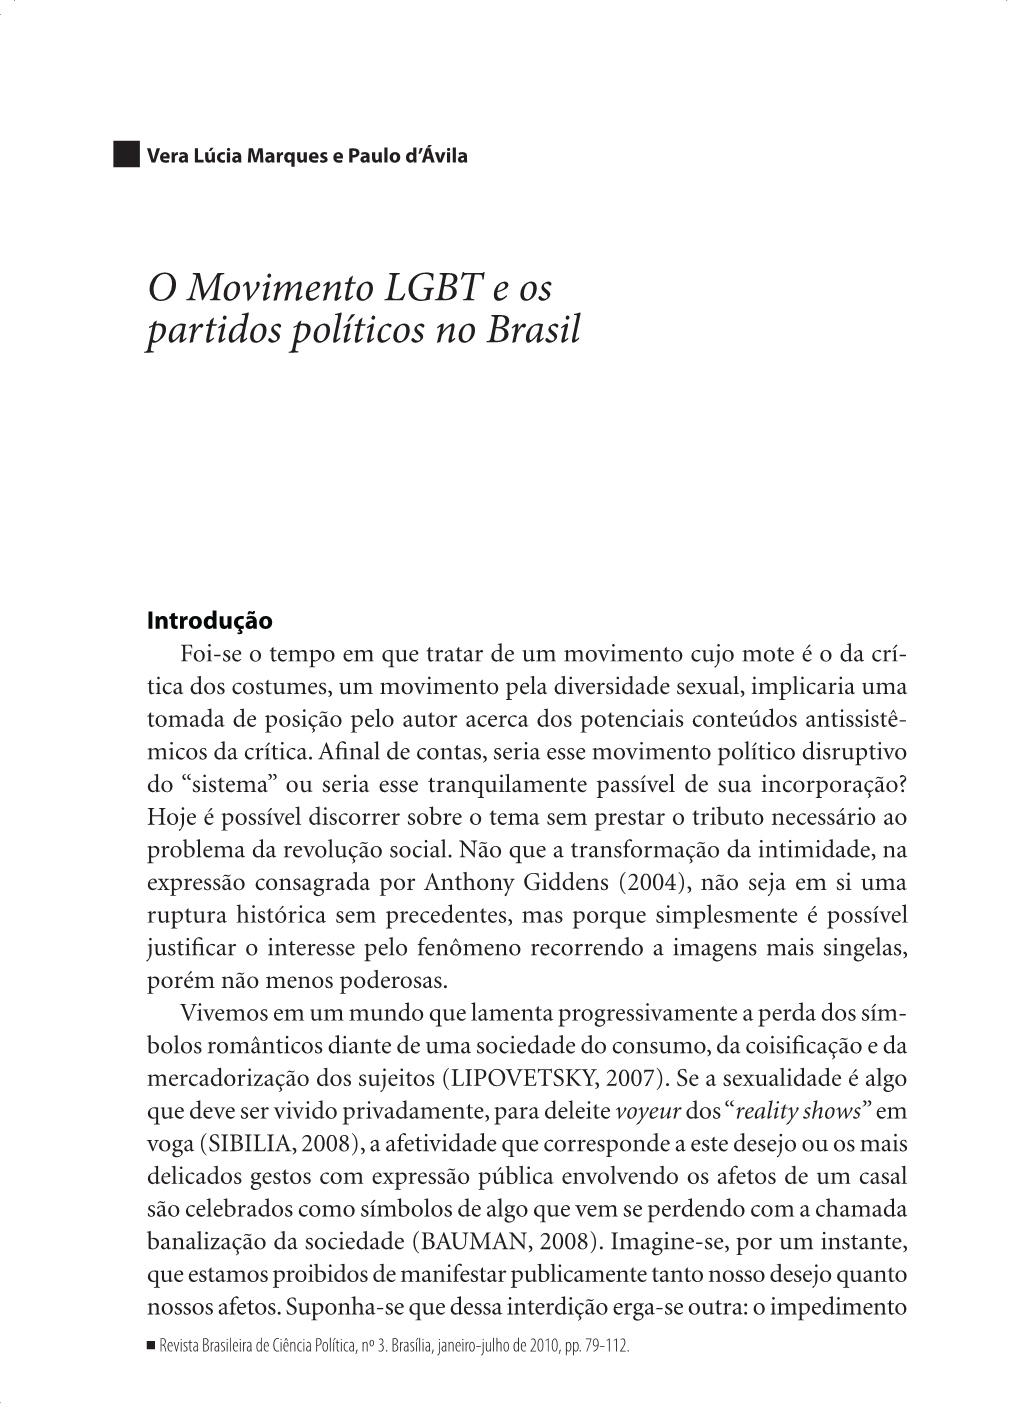 O Movimento LGBT E Os Partidos Políticos No Brasil